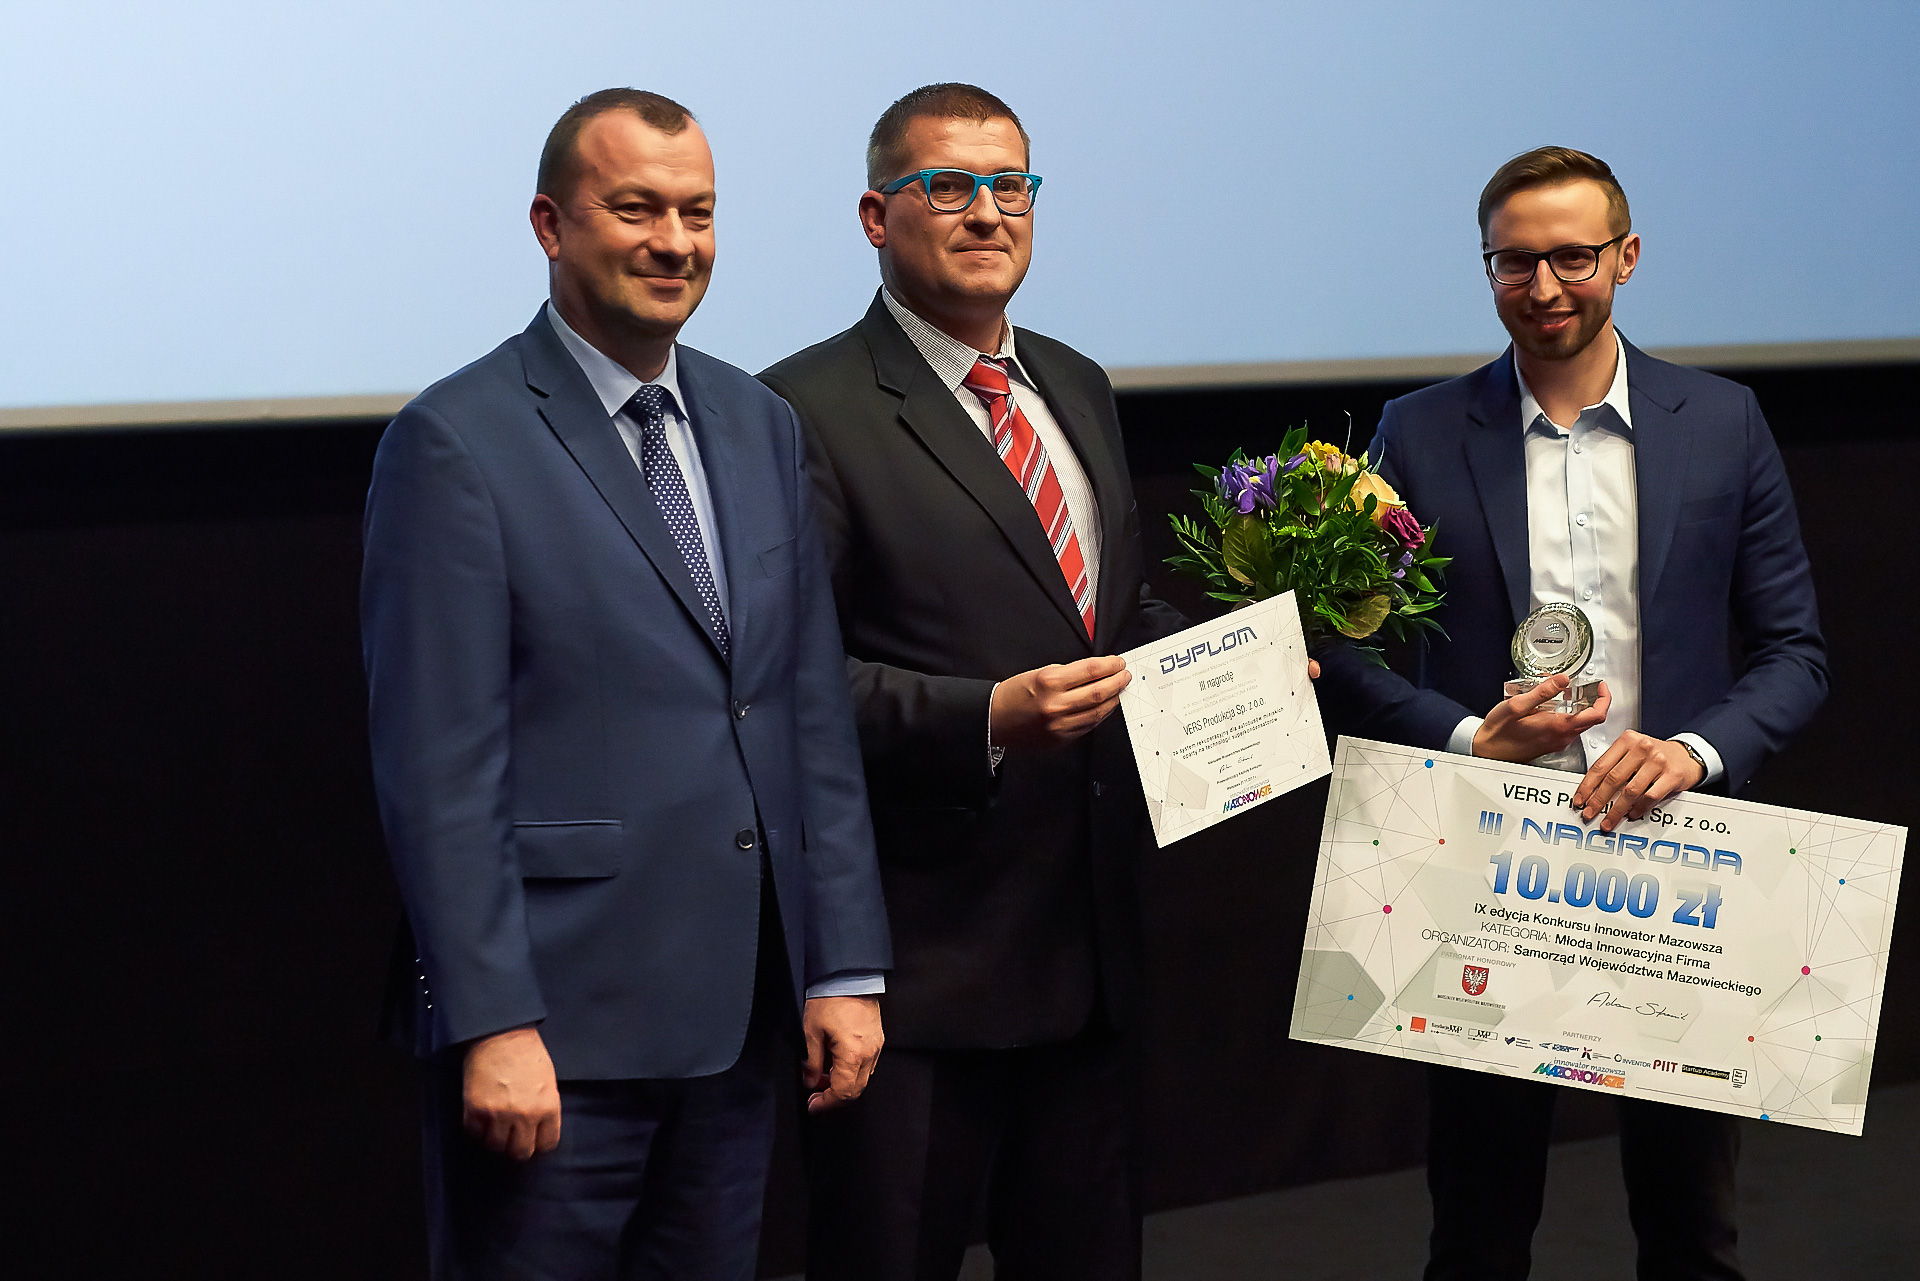 Wręczenie nagrody za III miejsce w kategorii Młoda Innowacyjna Firma firmie VERS Produkcja Sp. z o.o.